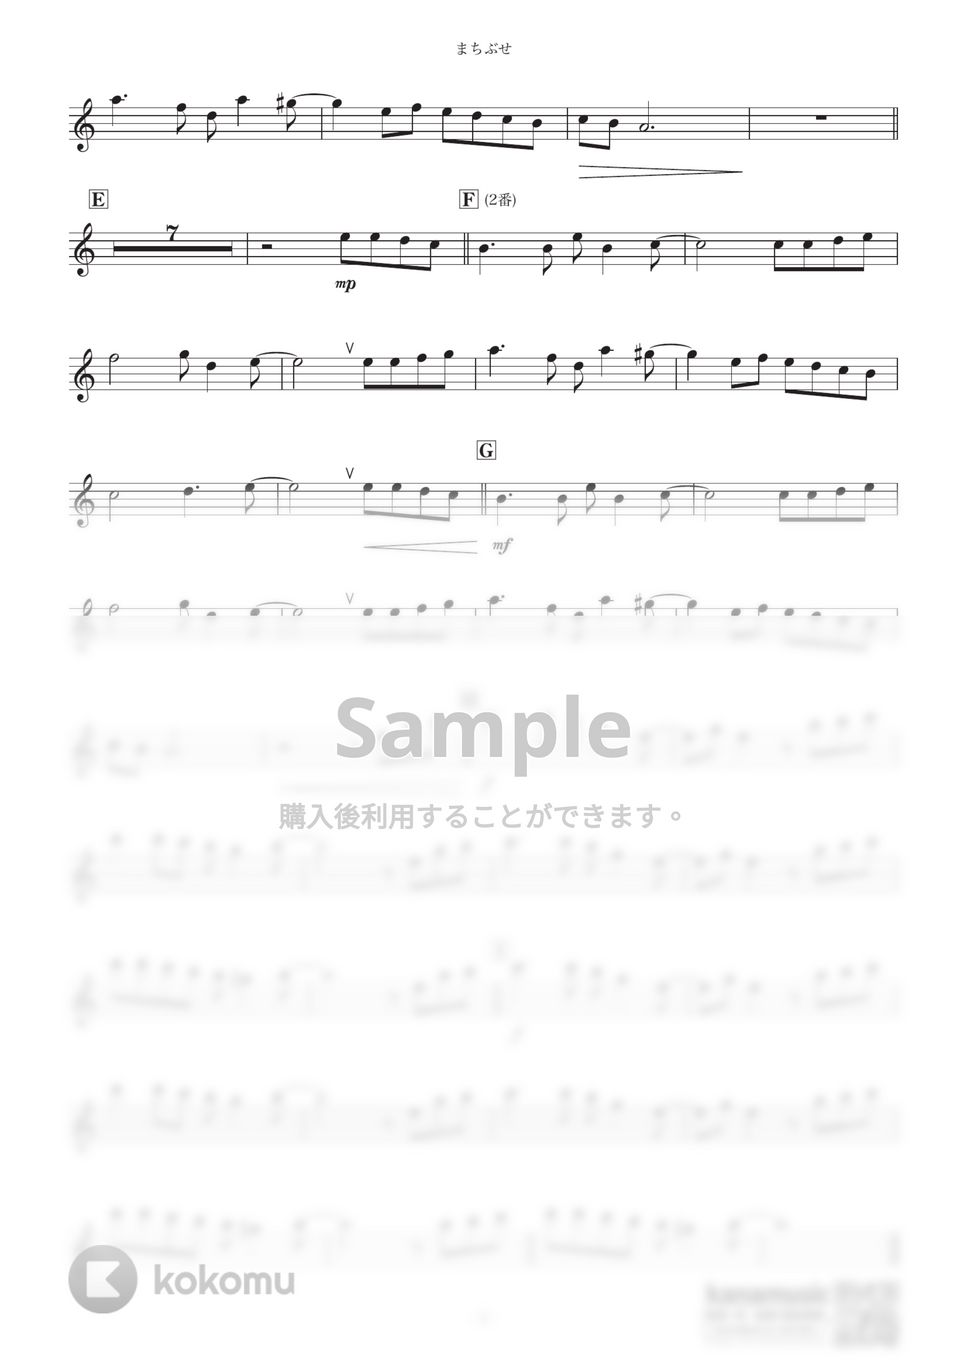 石川ひとみ - まちぶせ (C) by kanamusic